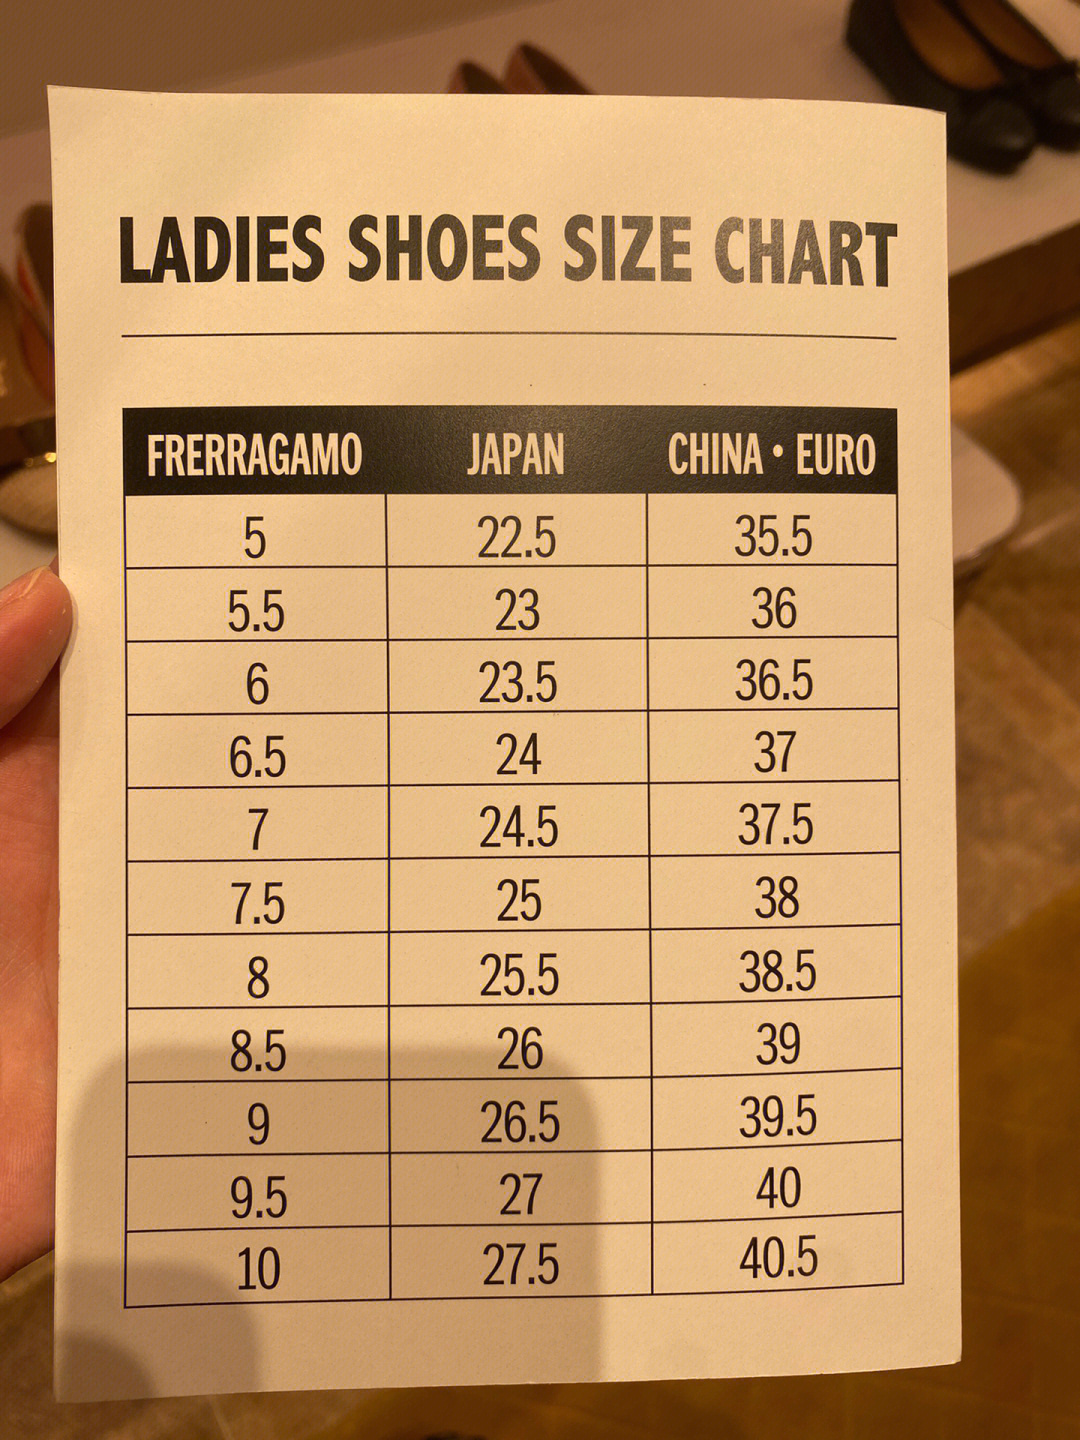 菲拉格慕男鞋码对照表图片